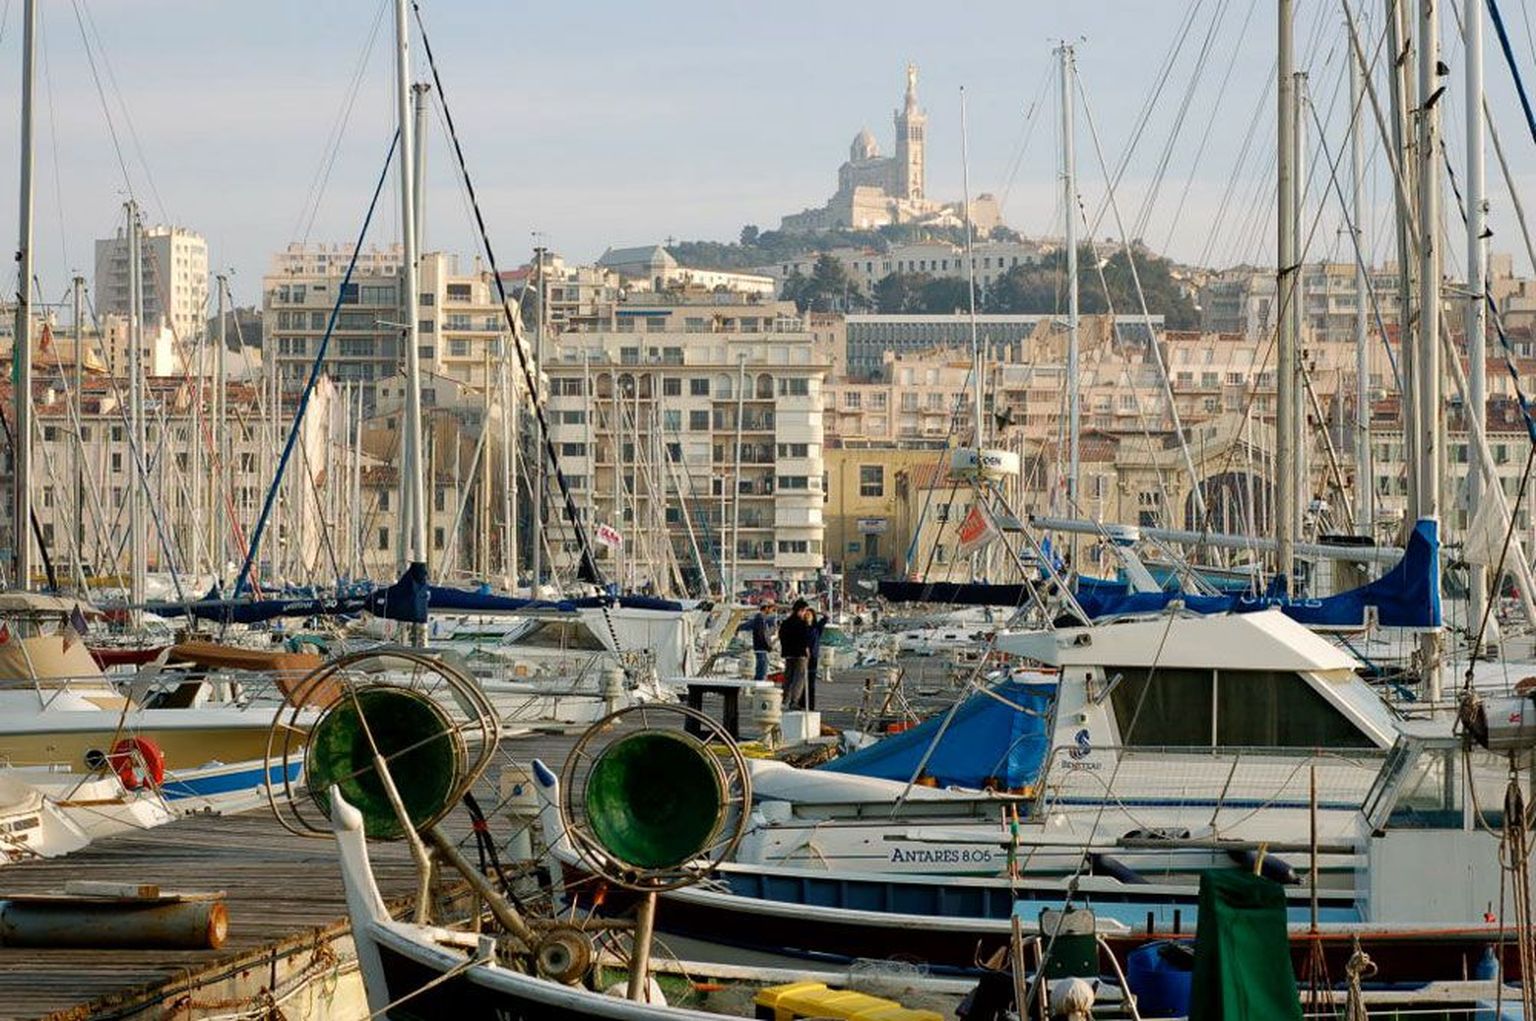 Marseille’ Vana sadam on linnasüdameks,   pakkudes vaateid, klassikalist kalaturgu ja kümneid kohvikuid ning restorane, taamal ilutseb aga Notre-Dame de la Garde – 160 meetri kõrgusel linna kohal     trooniv katedraal, üks linna olulisemaid sümboleid.